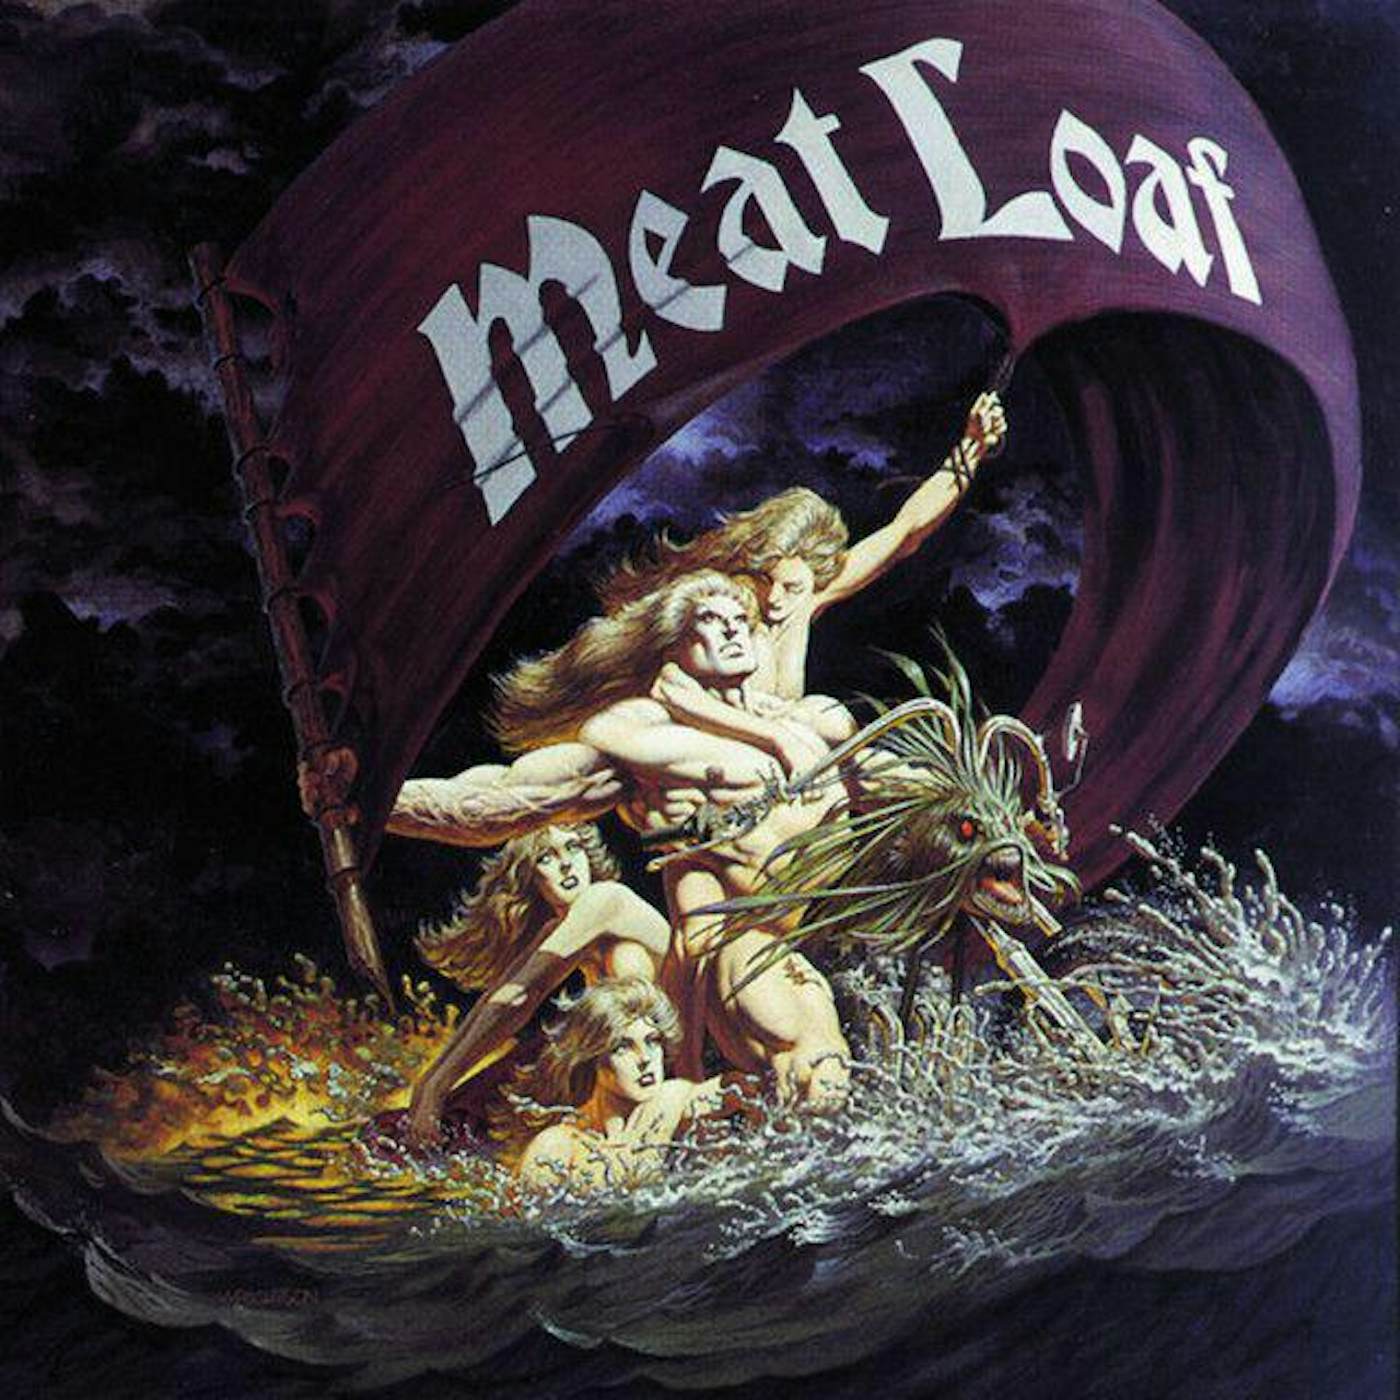 Meat Loaf Dead Ringer (Violet) Vinyl Record